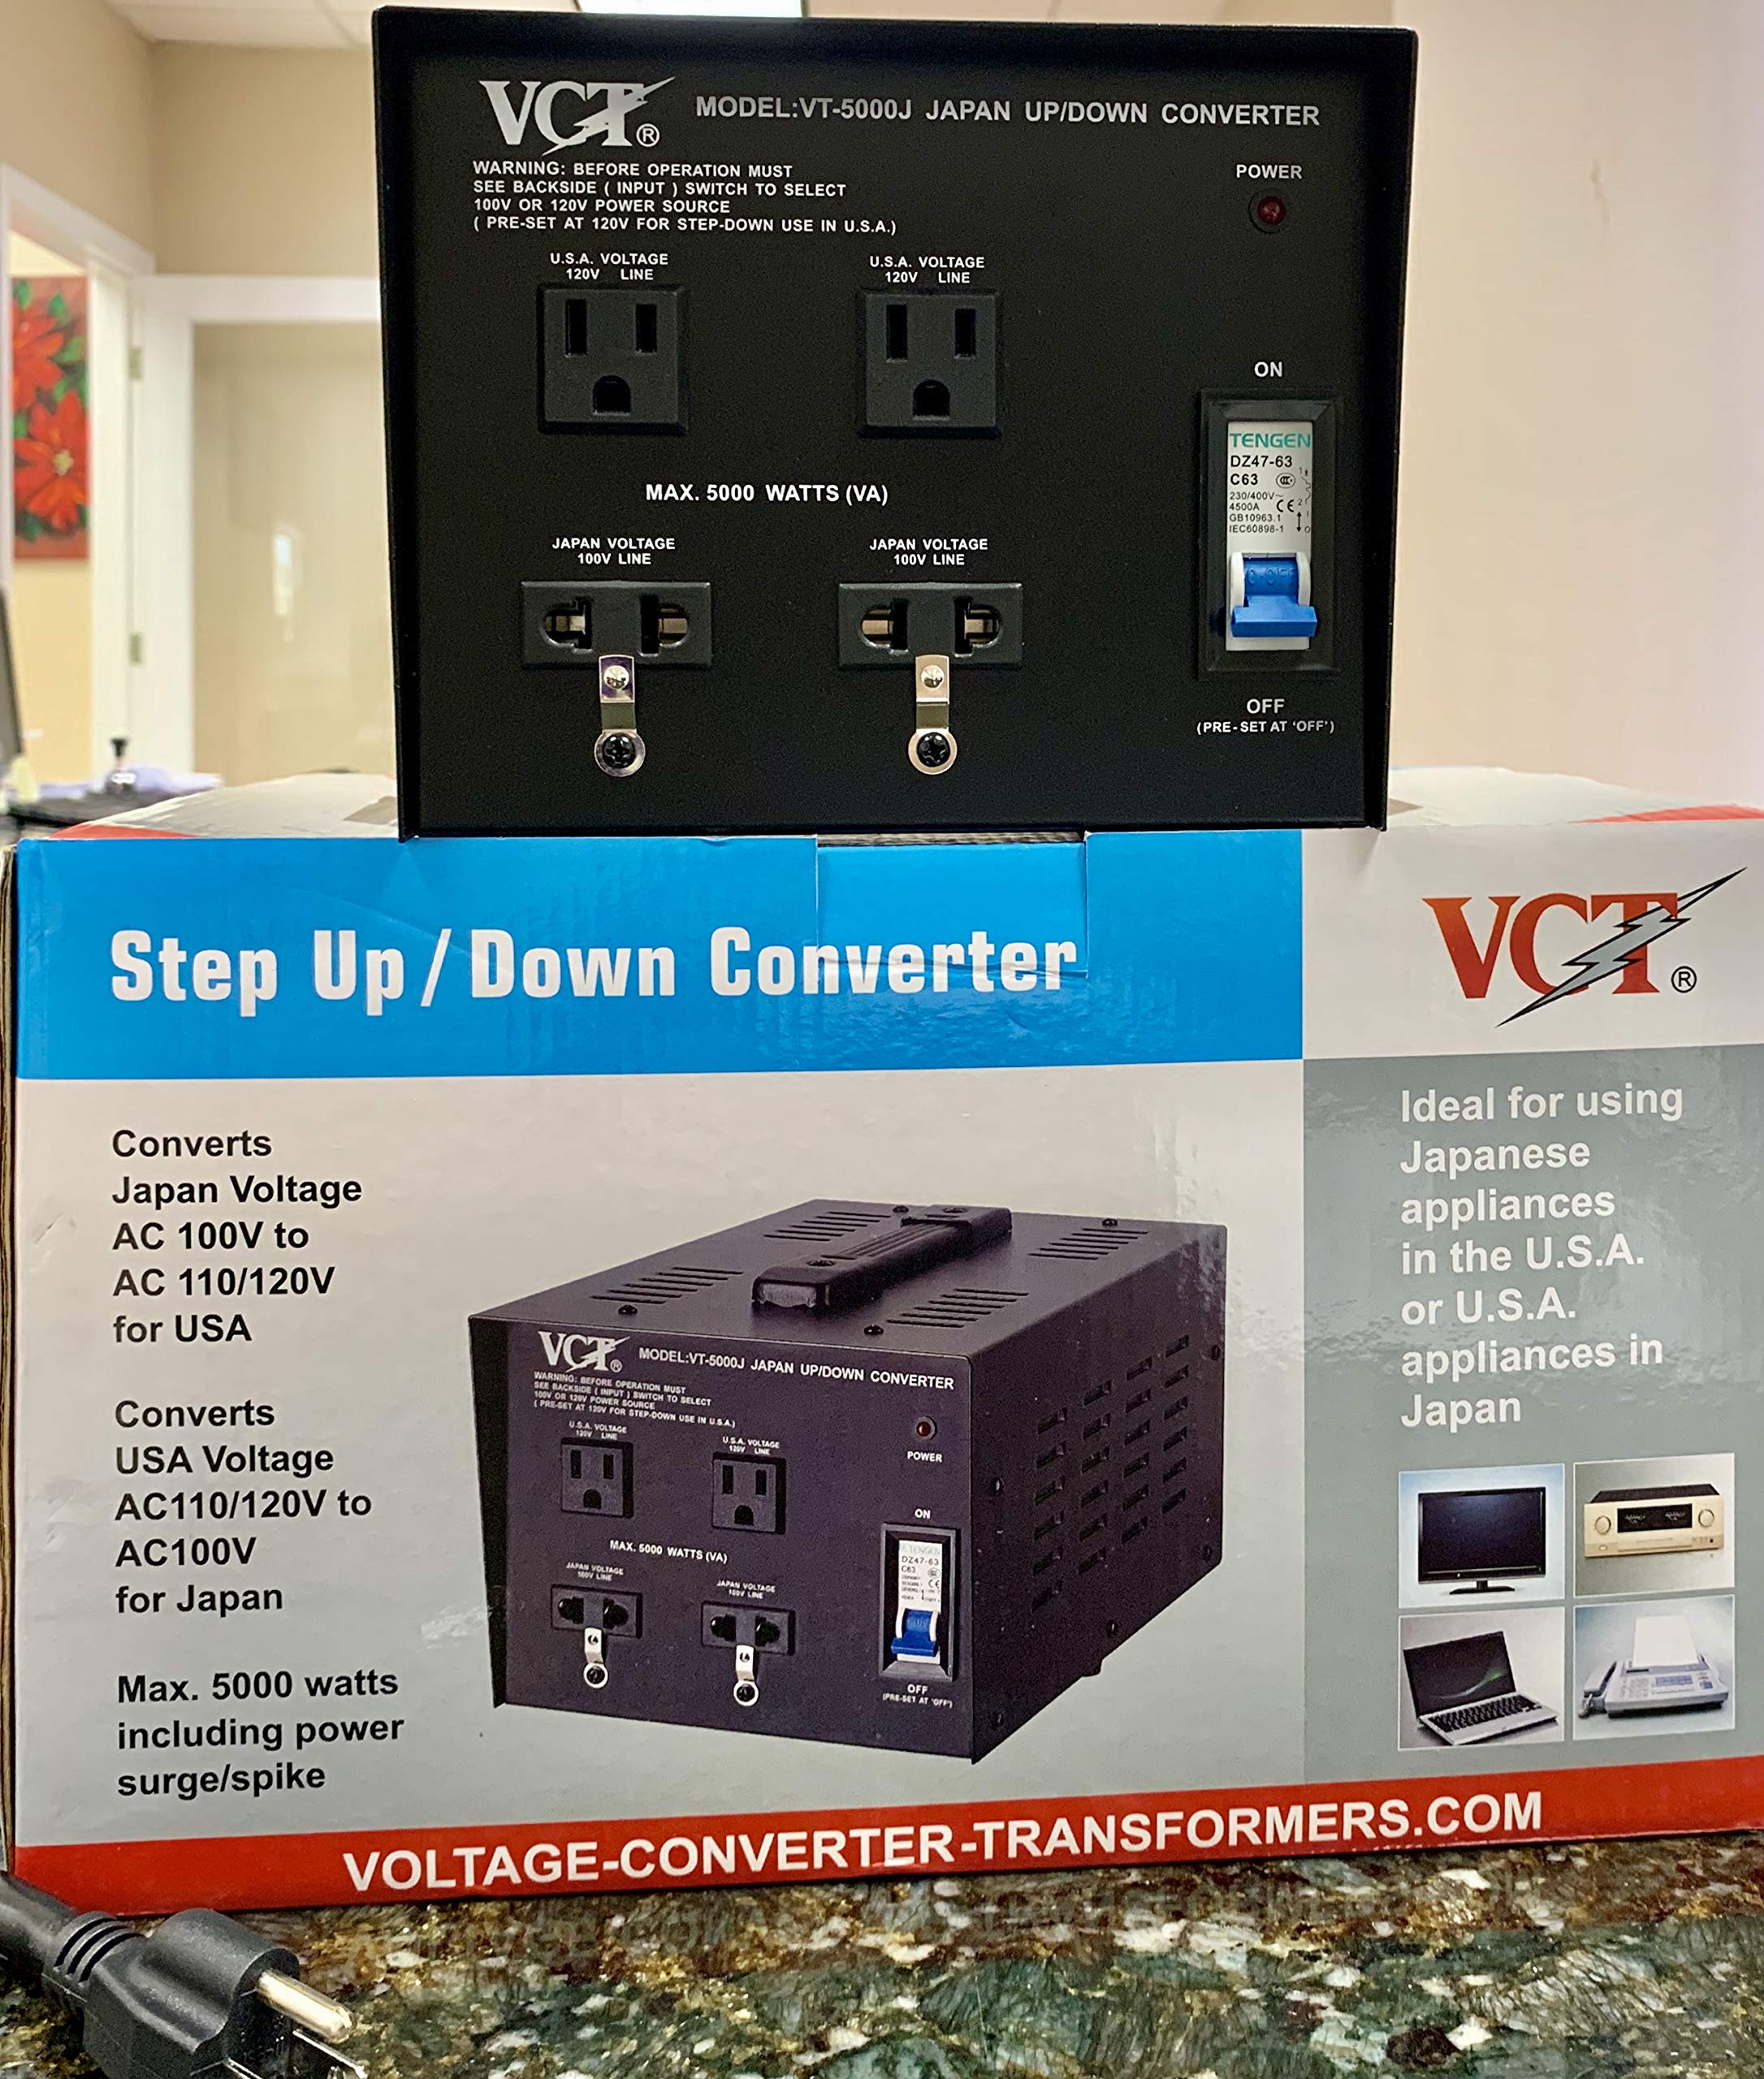 Vct-5000J Japanese Voltage Converter Transformer Converts Japan 100 Volt To 110V Or 110 Volt To 100V (5000 Watt)